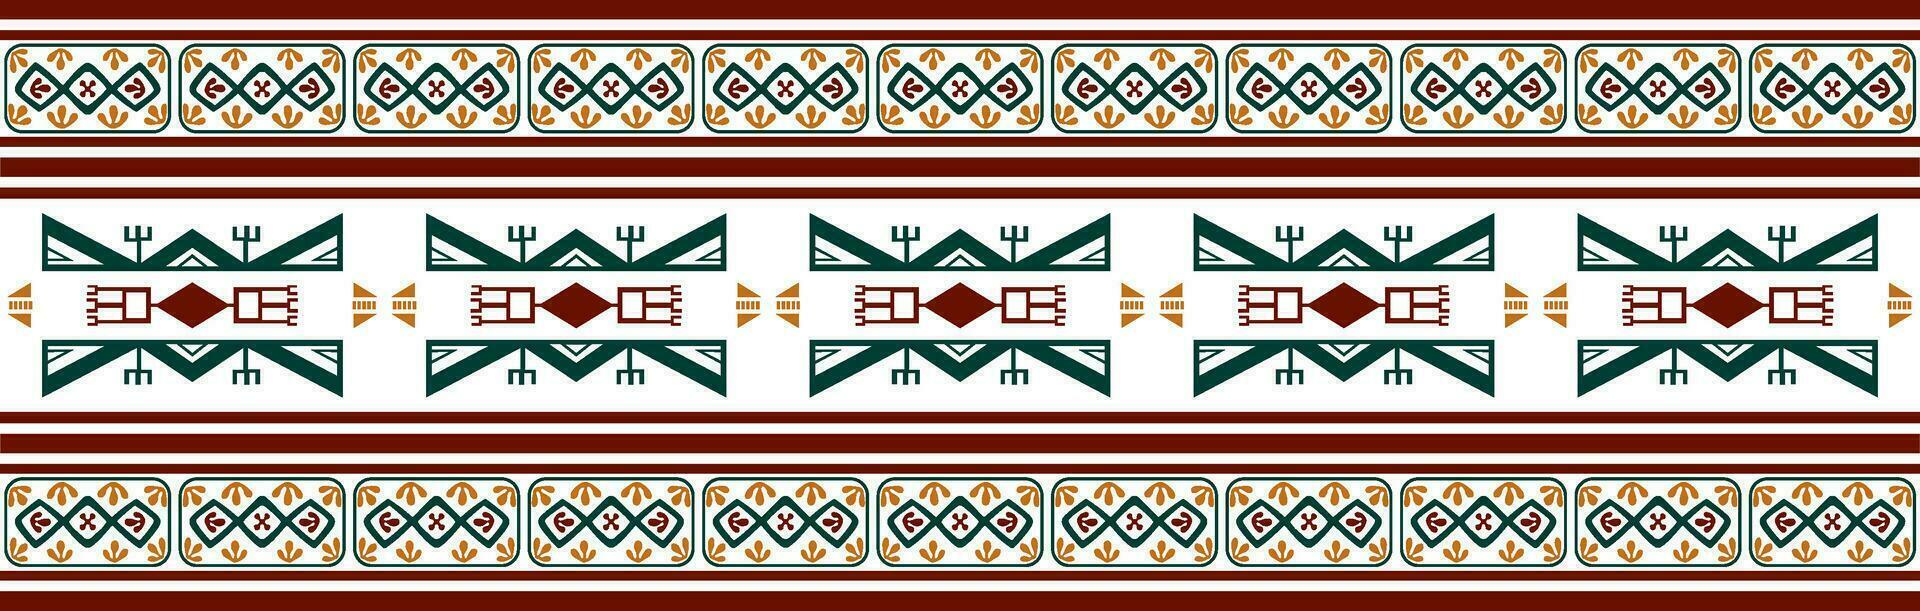 Vektor bunt einheimisch amerikanisch nahtlos Muster. endlos aztekisch, Maya, Inka Ornament. Zeichnung zum Rand und Rahmen